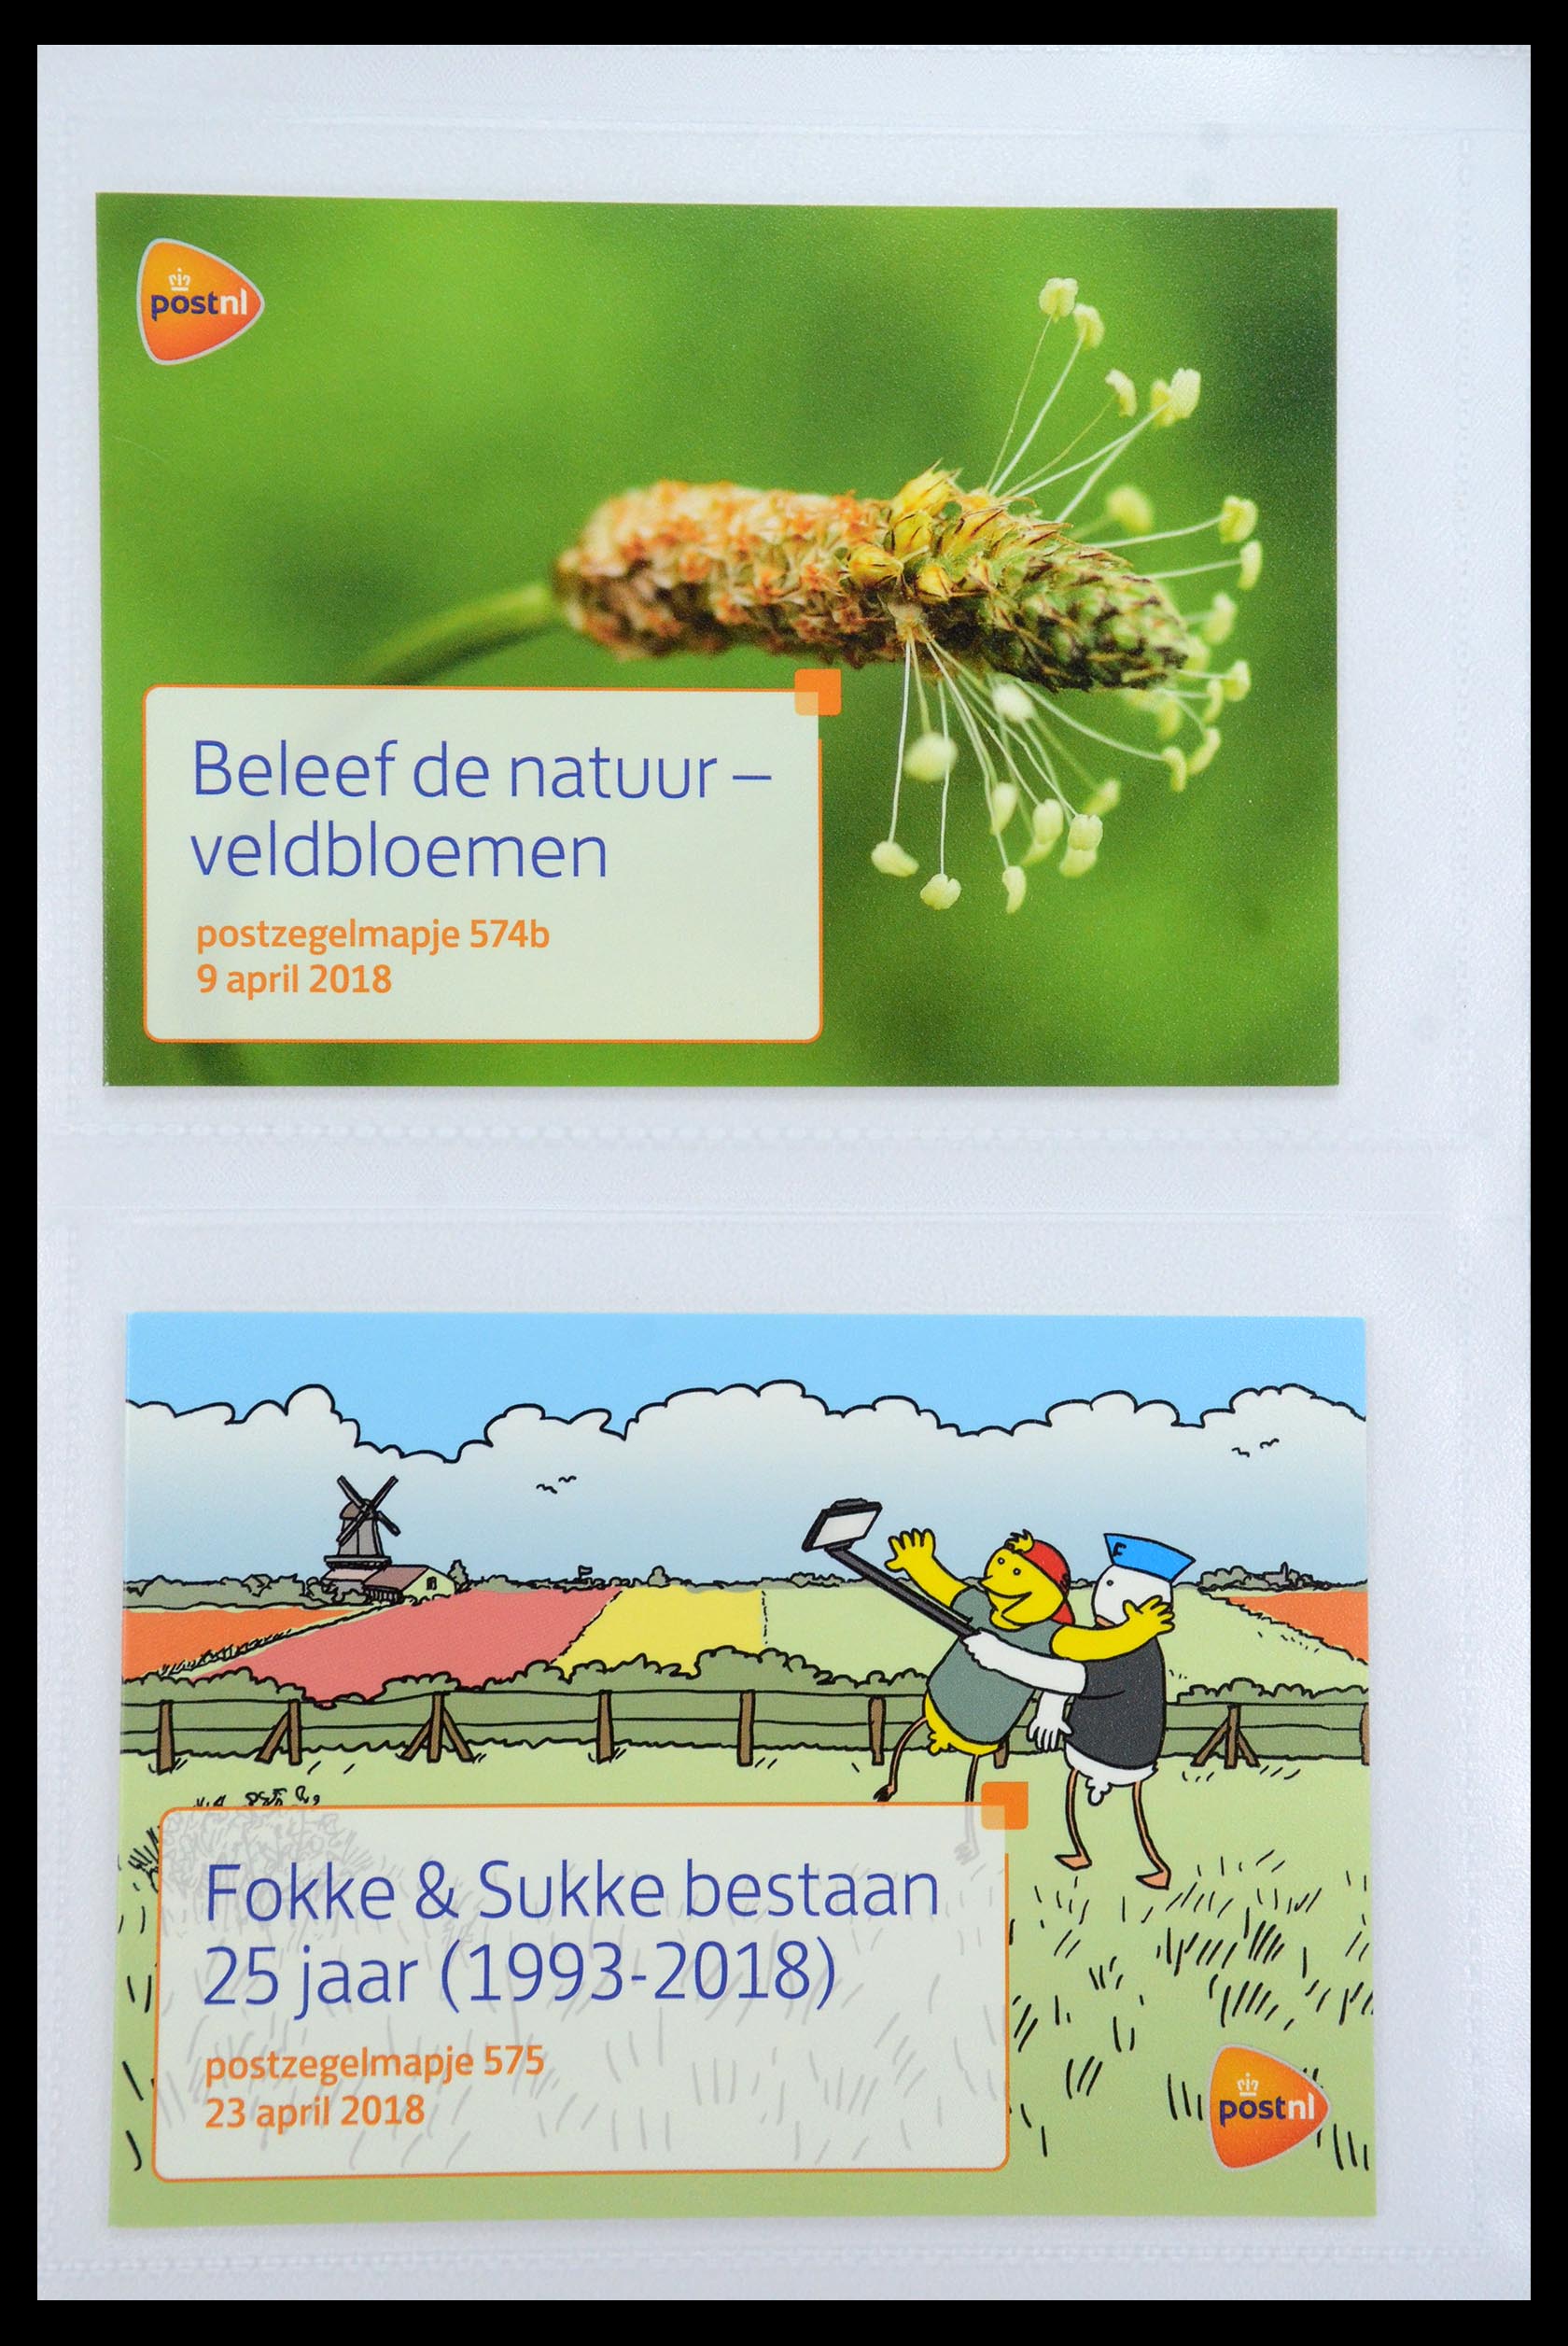 35947 346 - Stamp Collection 35947 Netherlands PTT presentation packs 1982-2019!